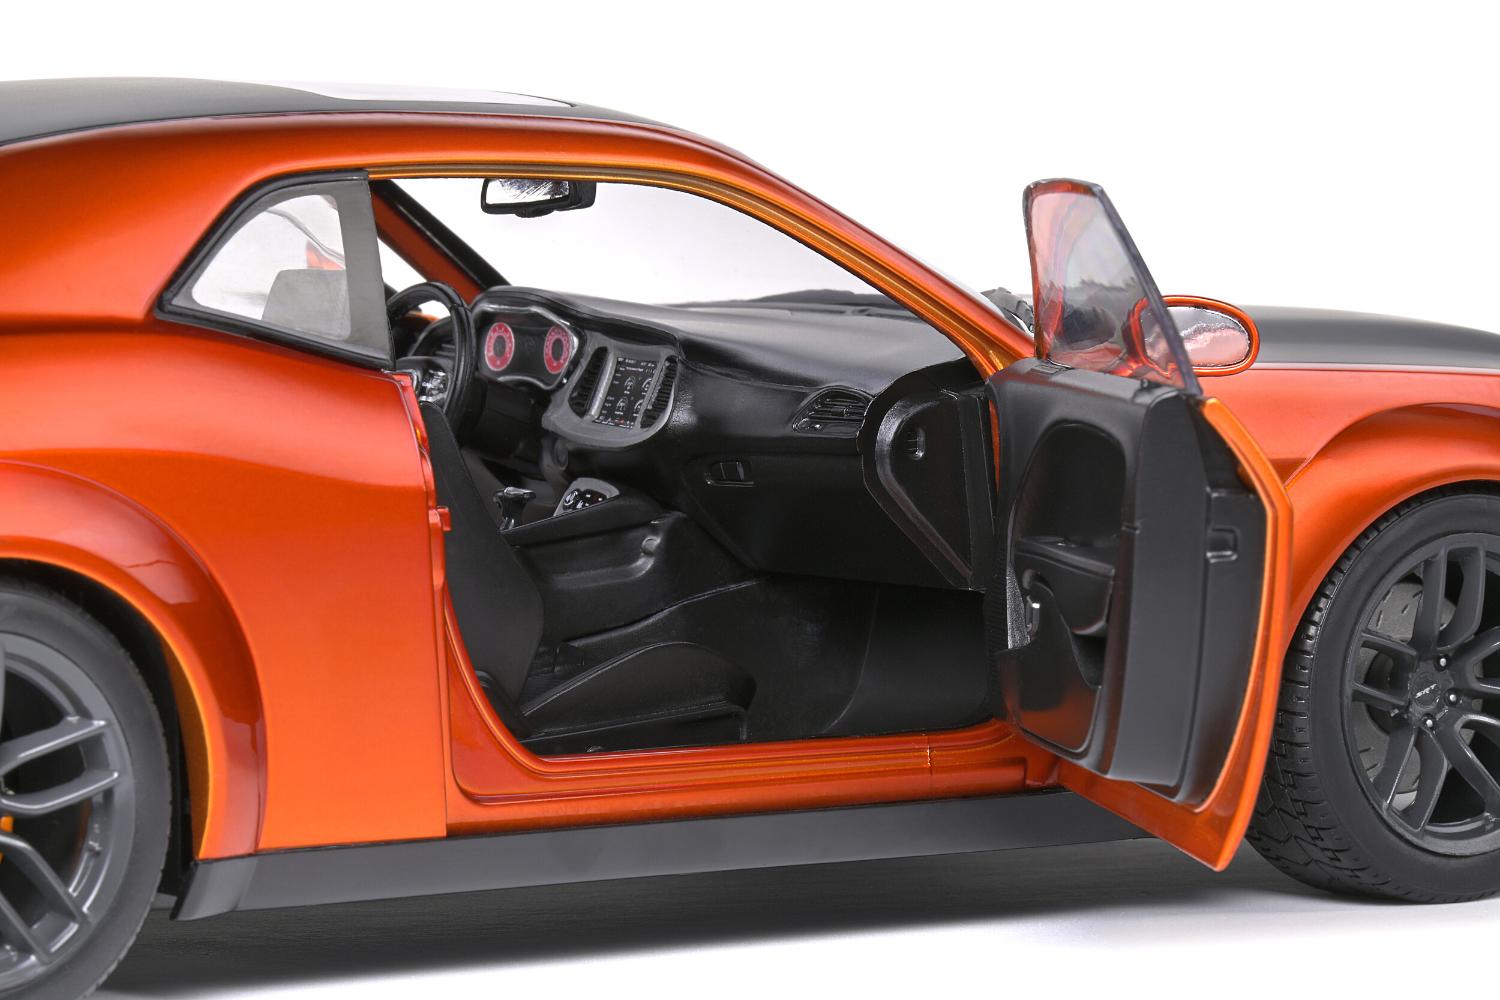 Dodge Challenger SRT Hellcat Redeye Widebody 2020 in metallic orange 1:18 scale model from Solido